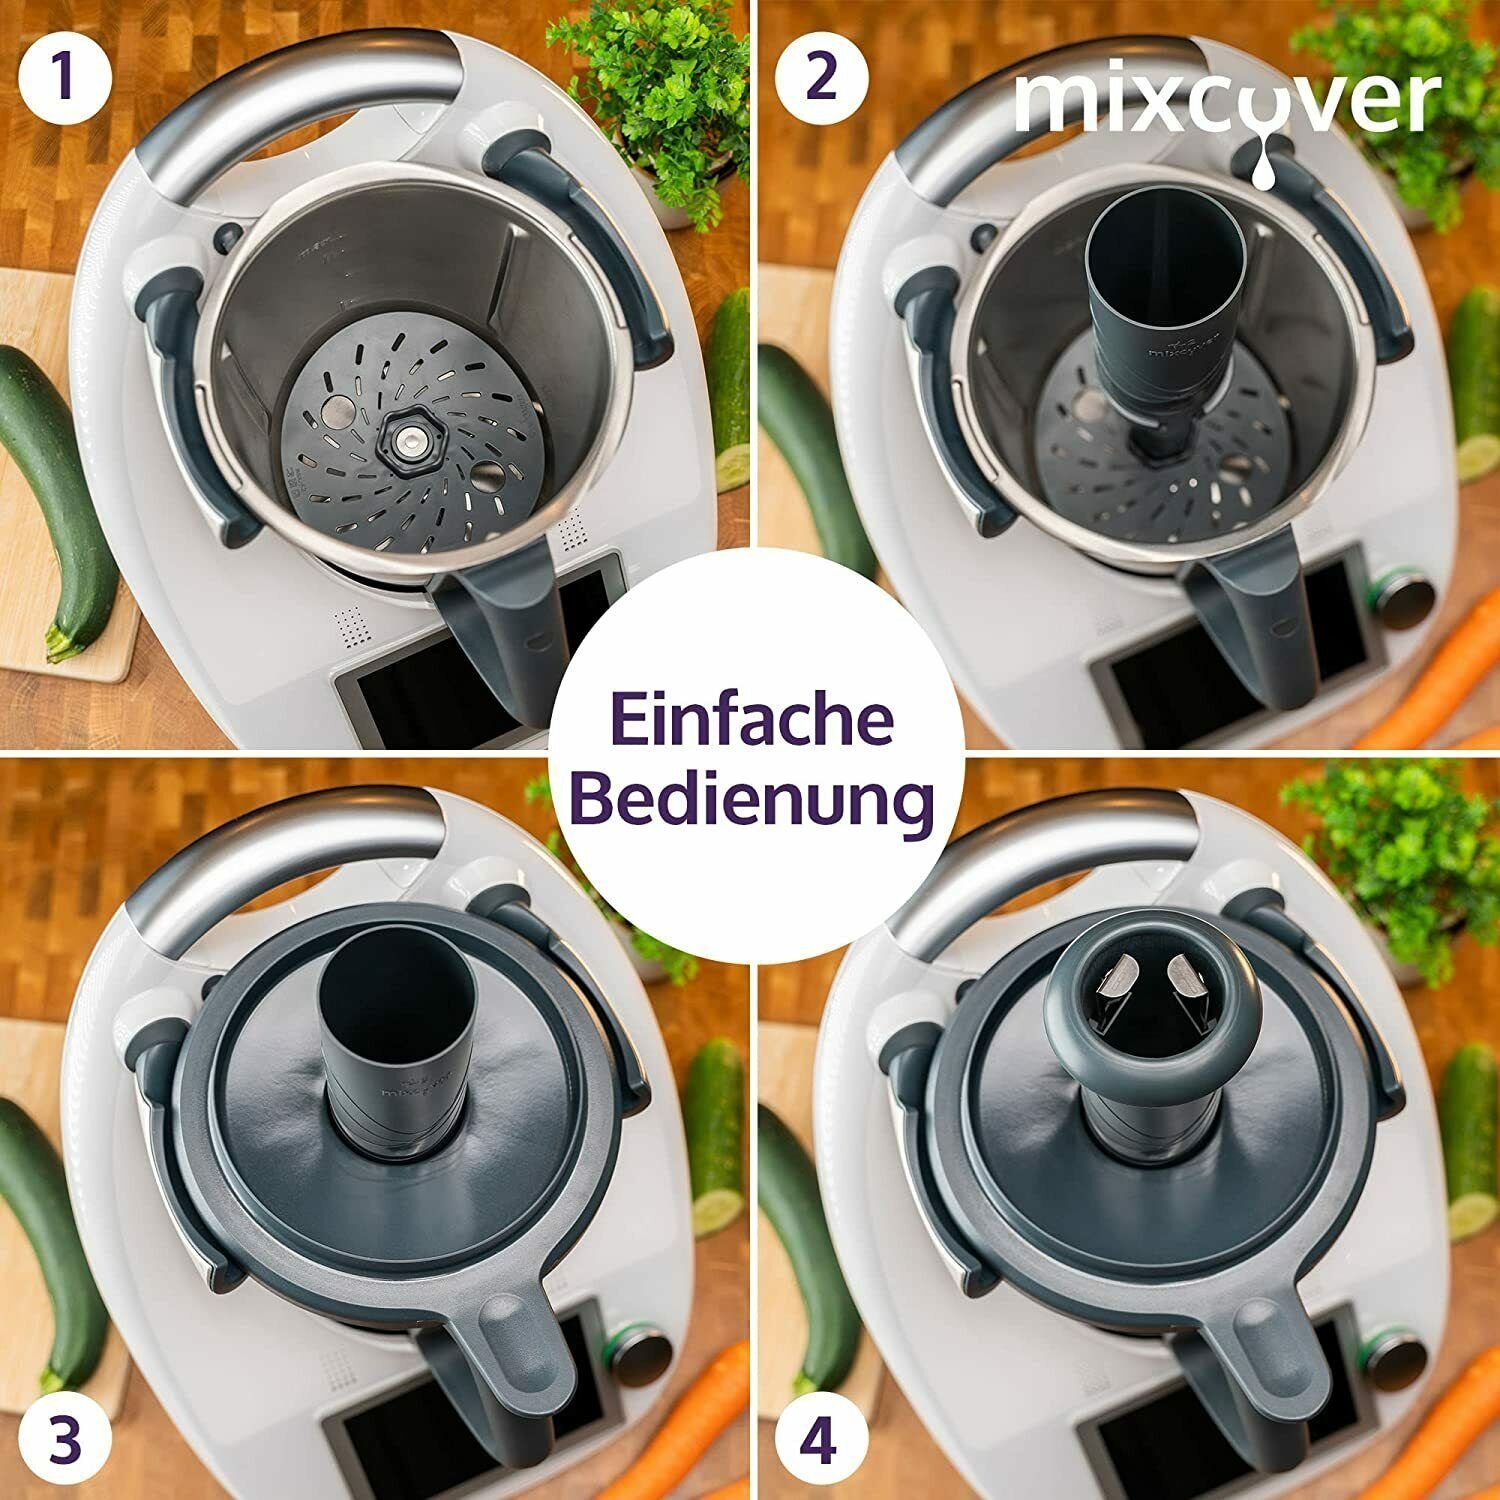 TM6 Thermomix kompatibel Küchenmaschinen-Adapter TM5 mit Mixcover mixcover Gemüsenudeln schneiden Spiralschneider